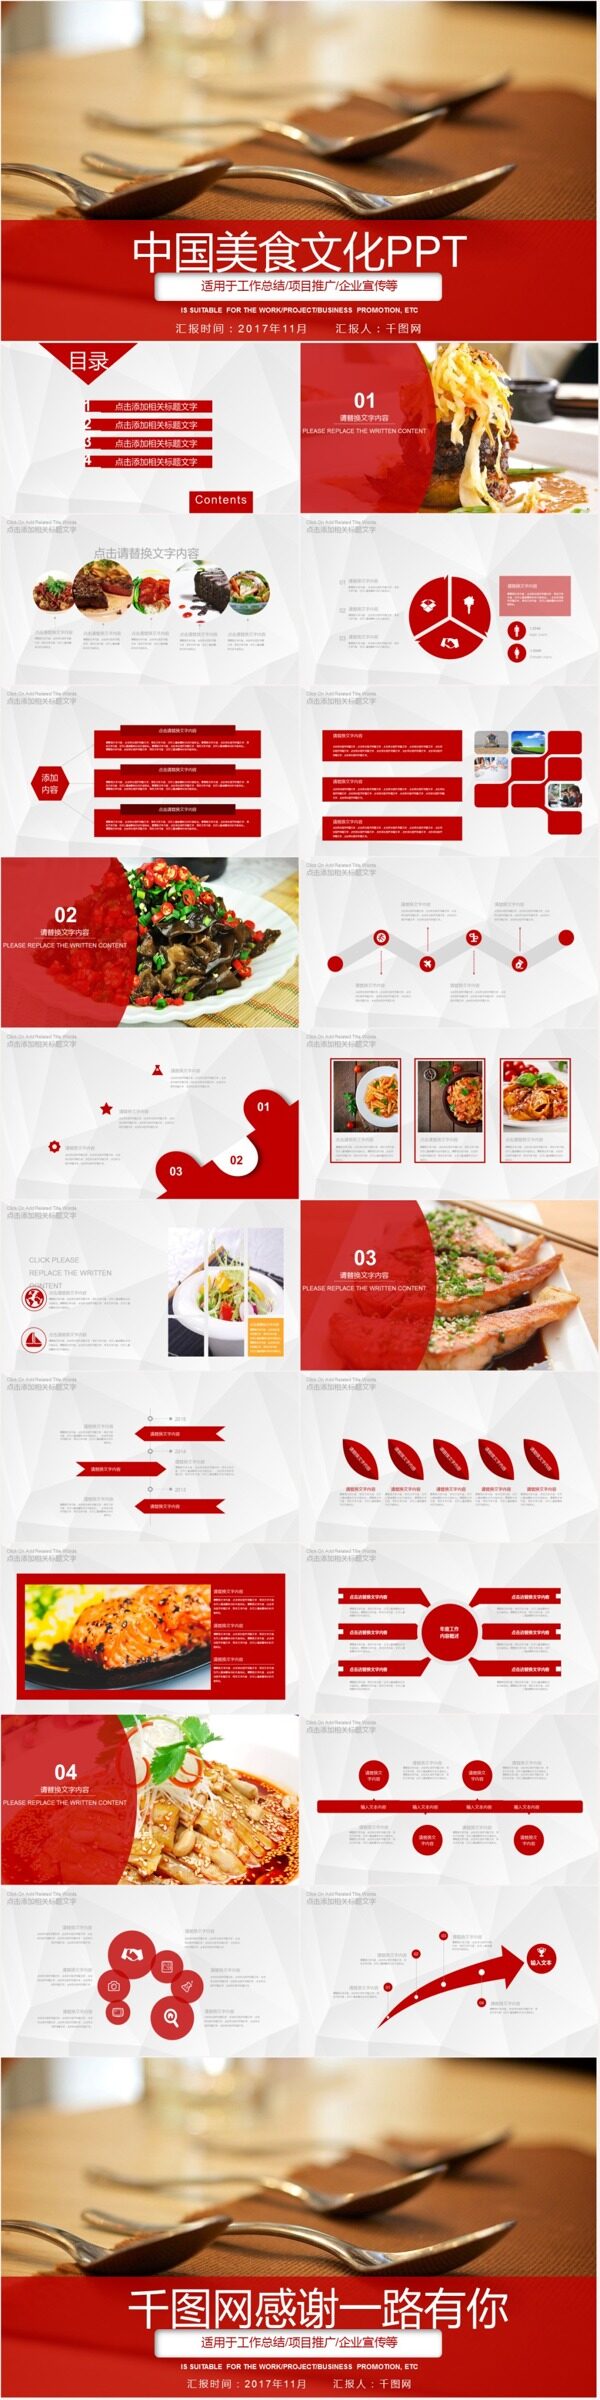 中国美食文化项目推广PPT模板下载